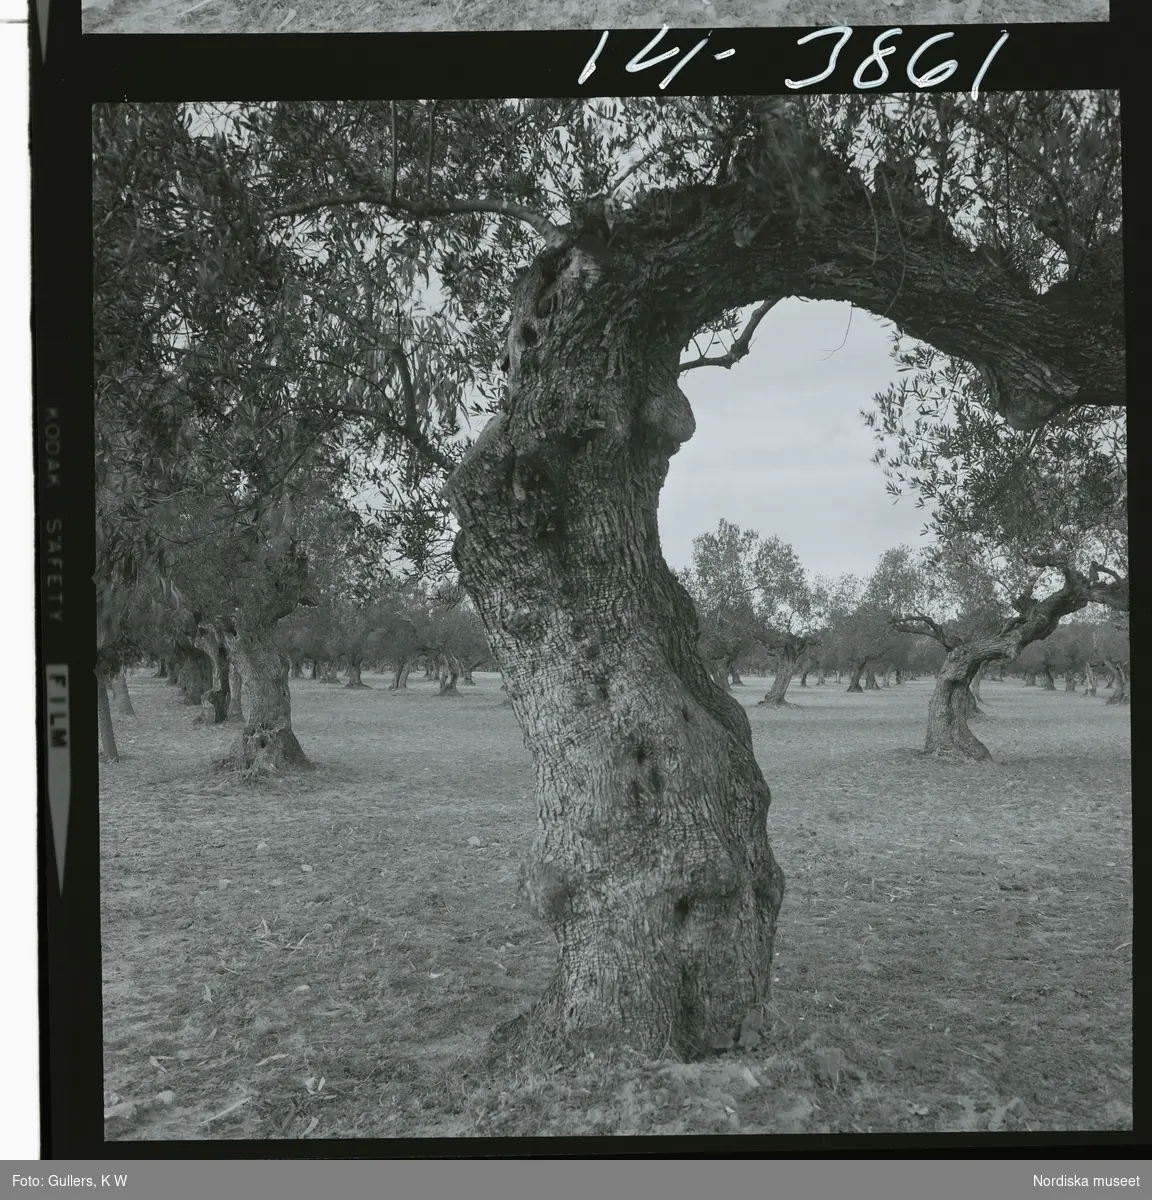 2791/1 Tunisien allmänt. Rader av olivträd i olivlund.